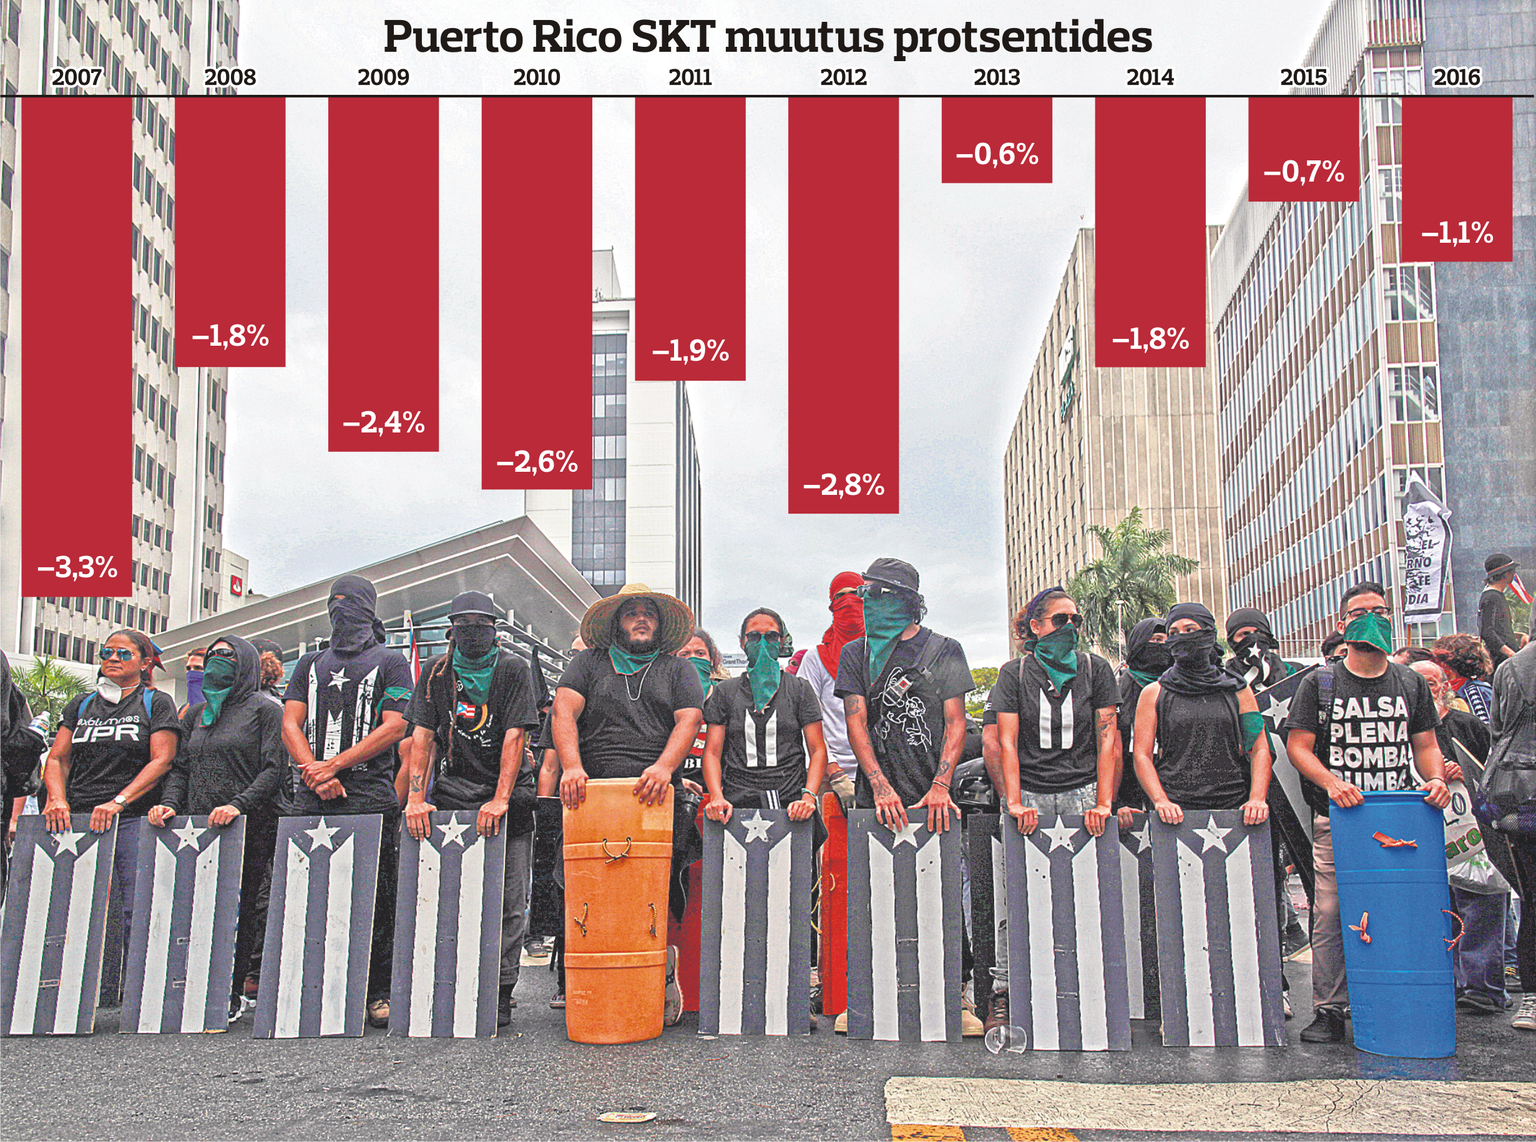 Pildil puertoricolased 1. mail valitsuse kokkuhoiupoliitika vastasel meelavaldusel pealinnas San Juanis.